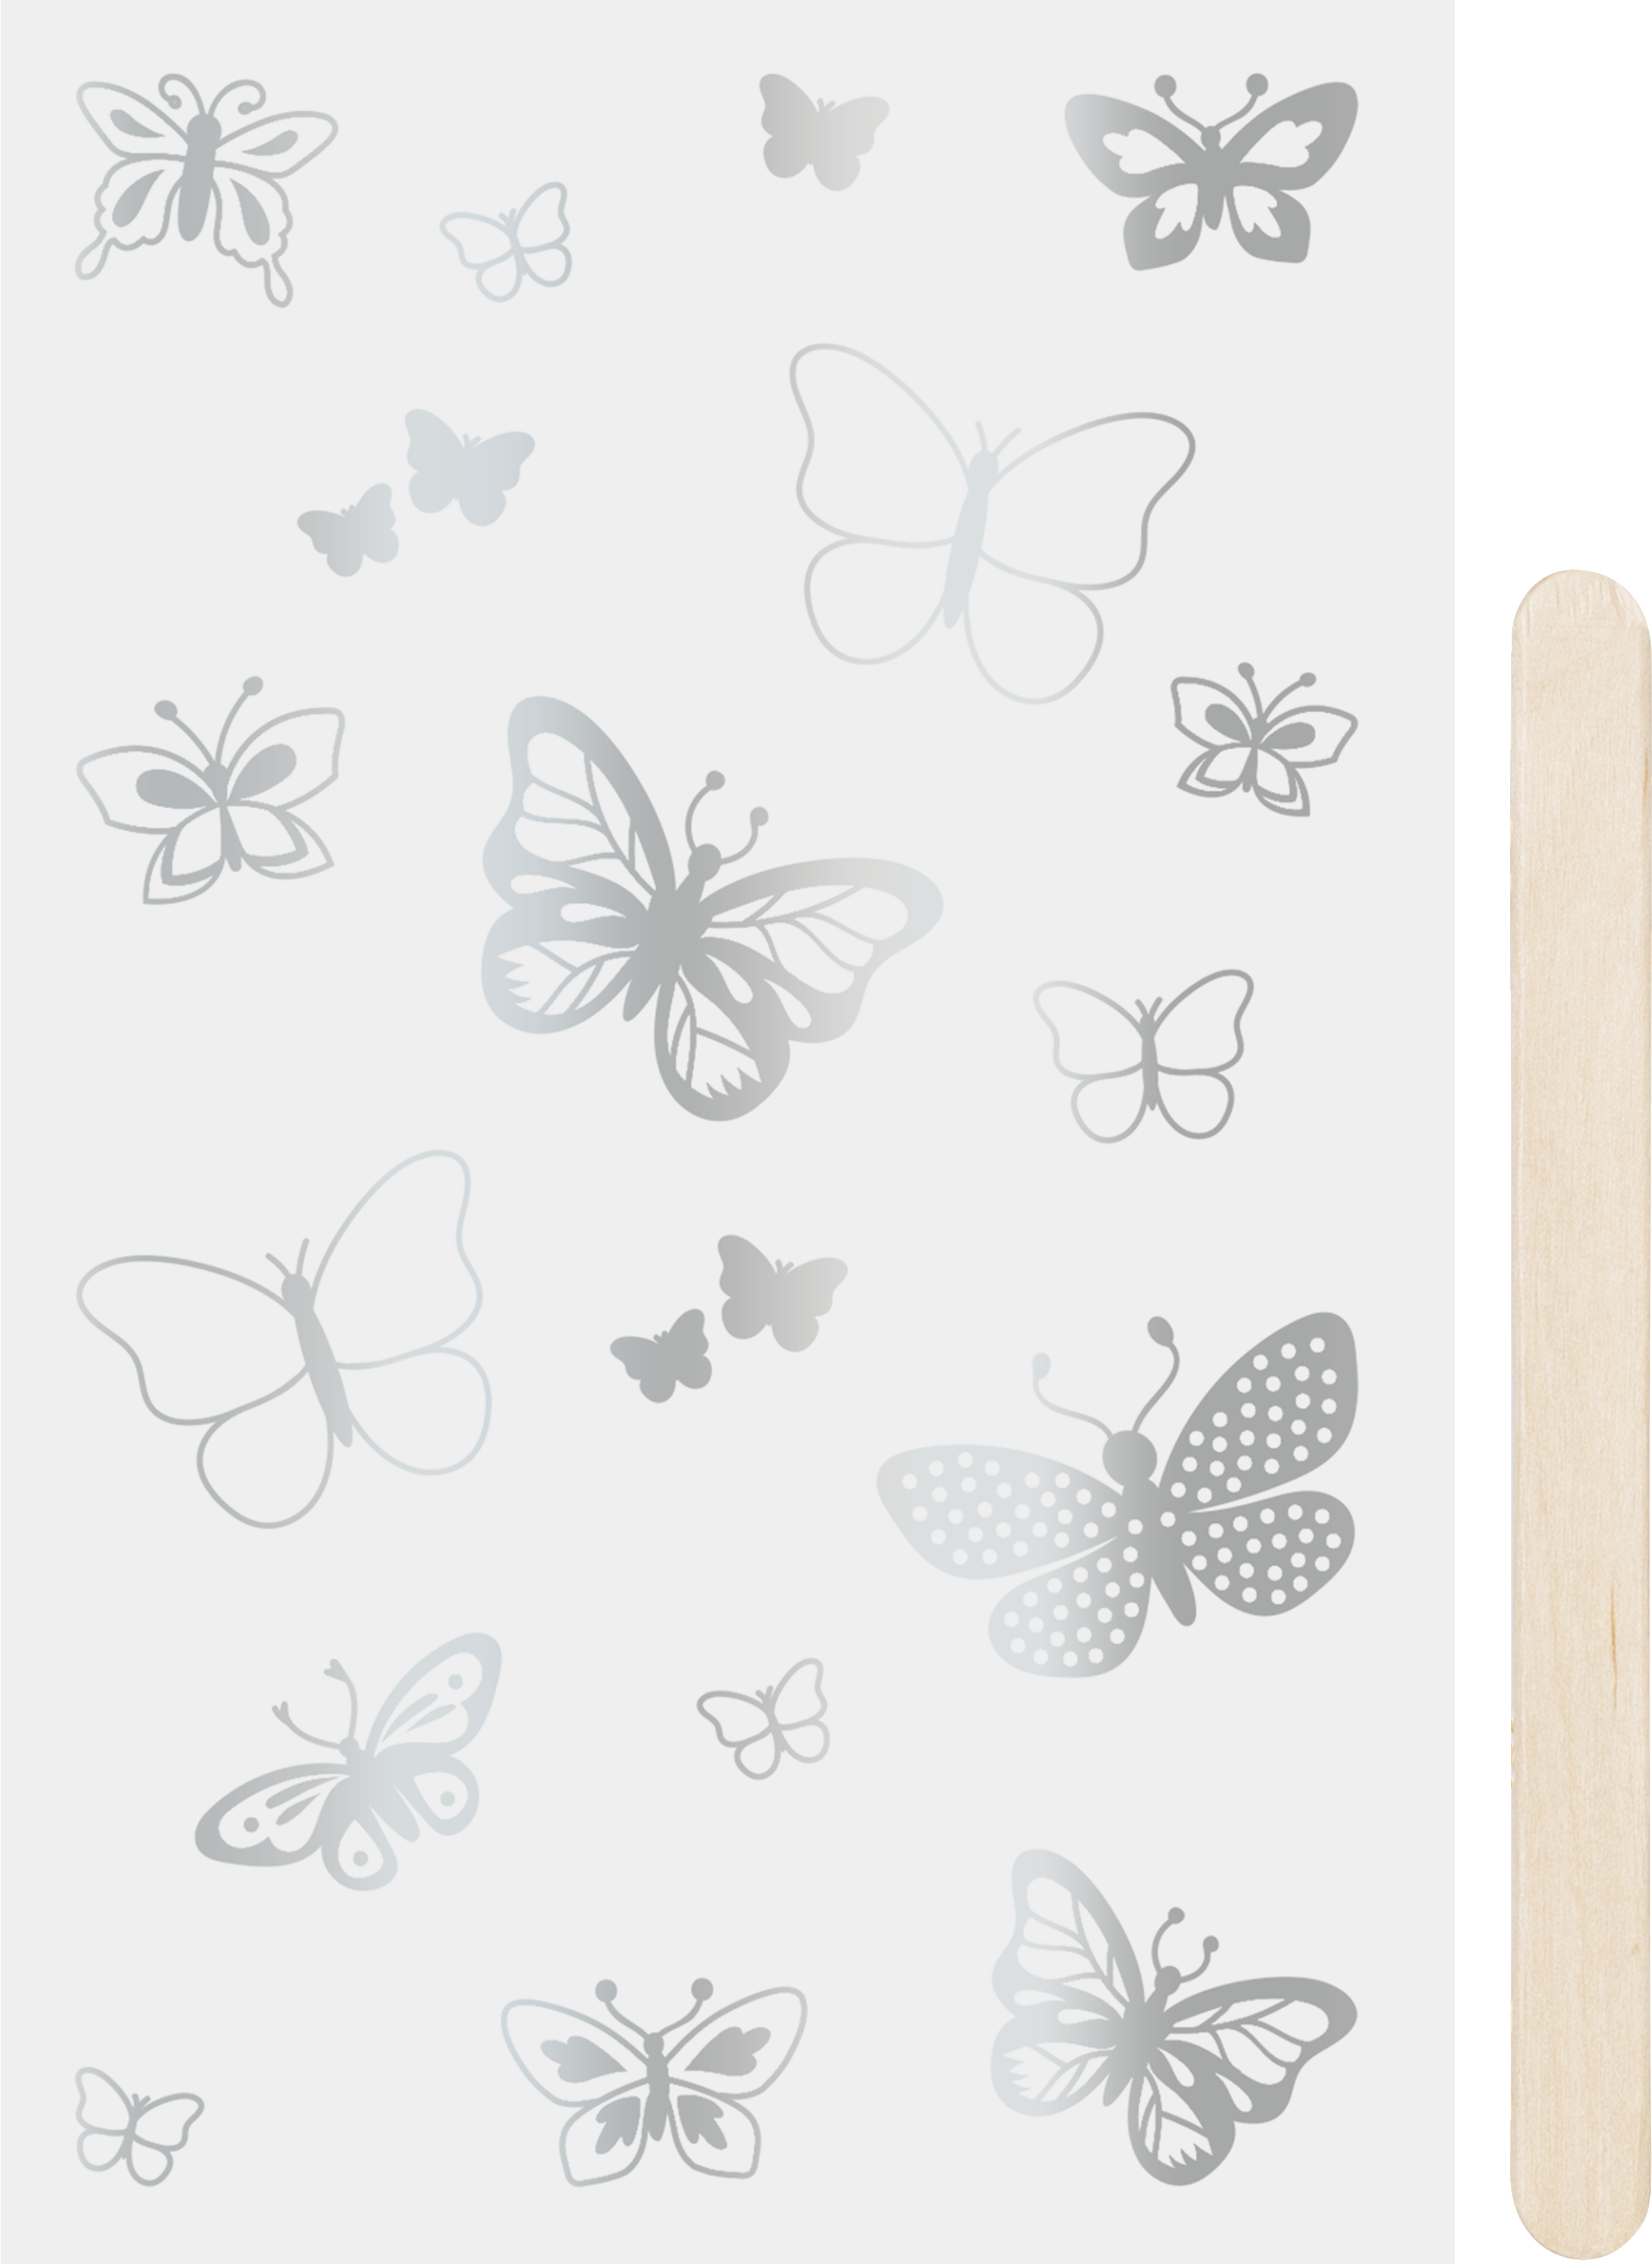 Rubbel-Sticker "Schmetterlinge" 10x19cm